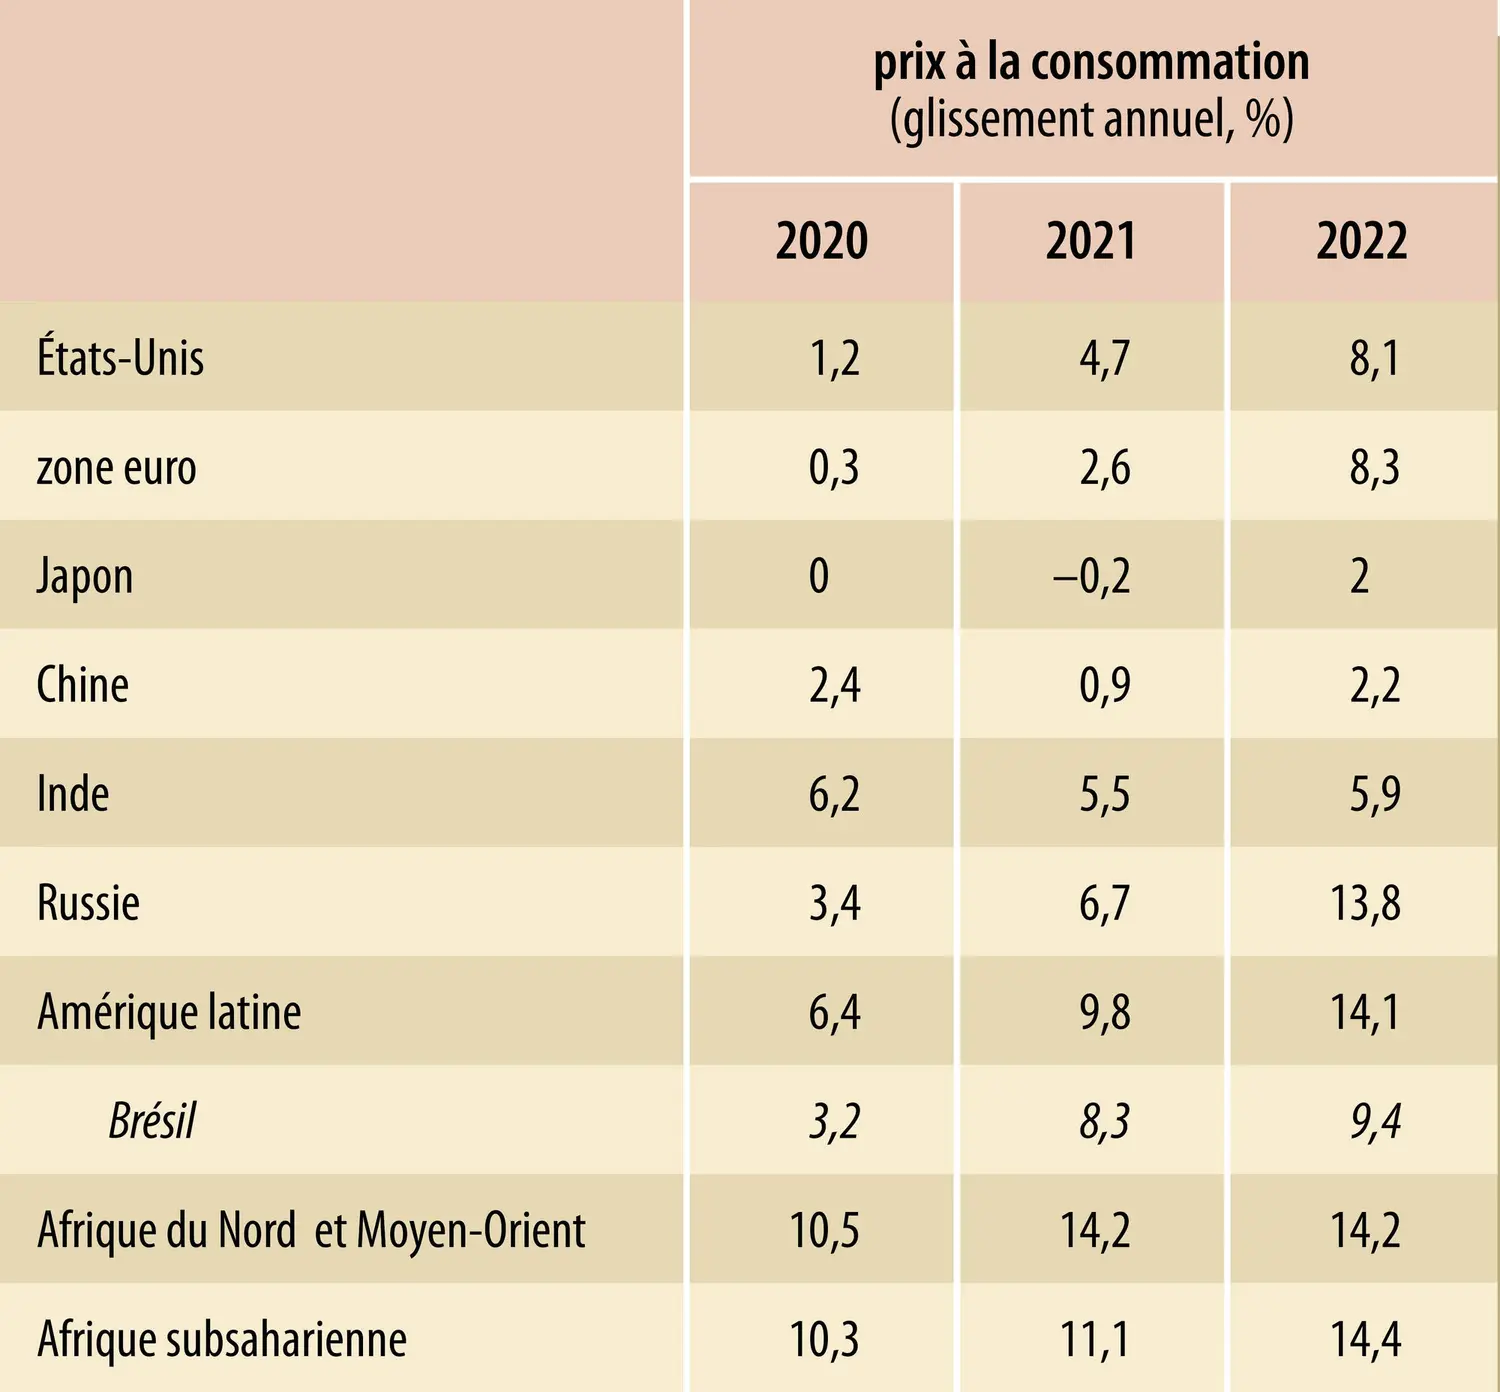 Prix à la consommation dans le monde (2020-2022)